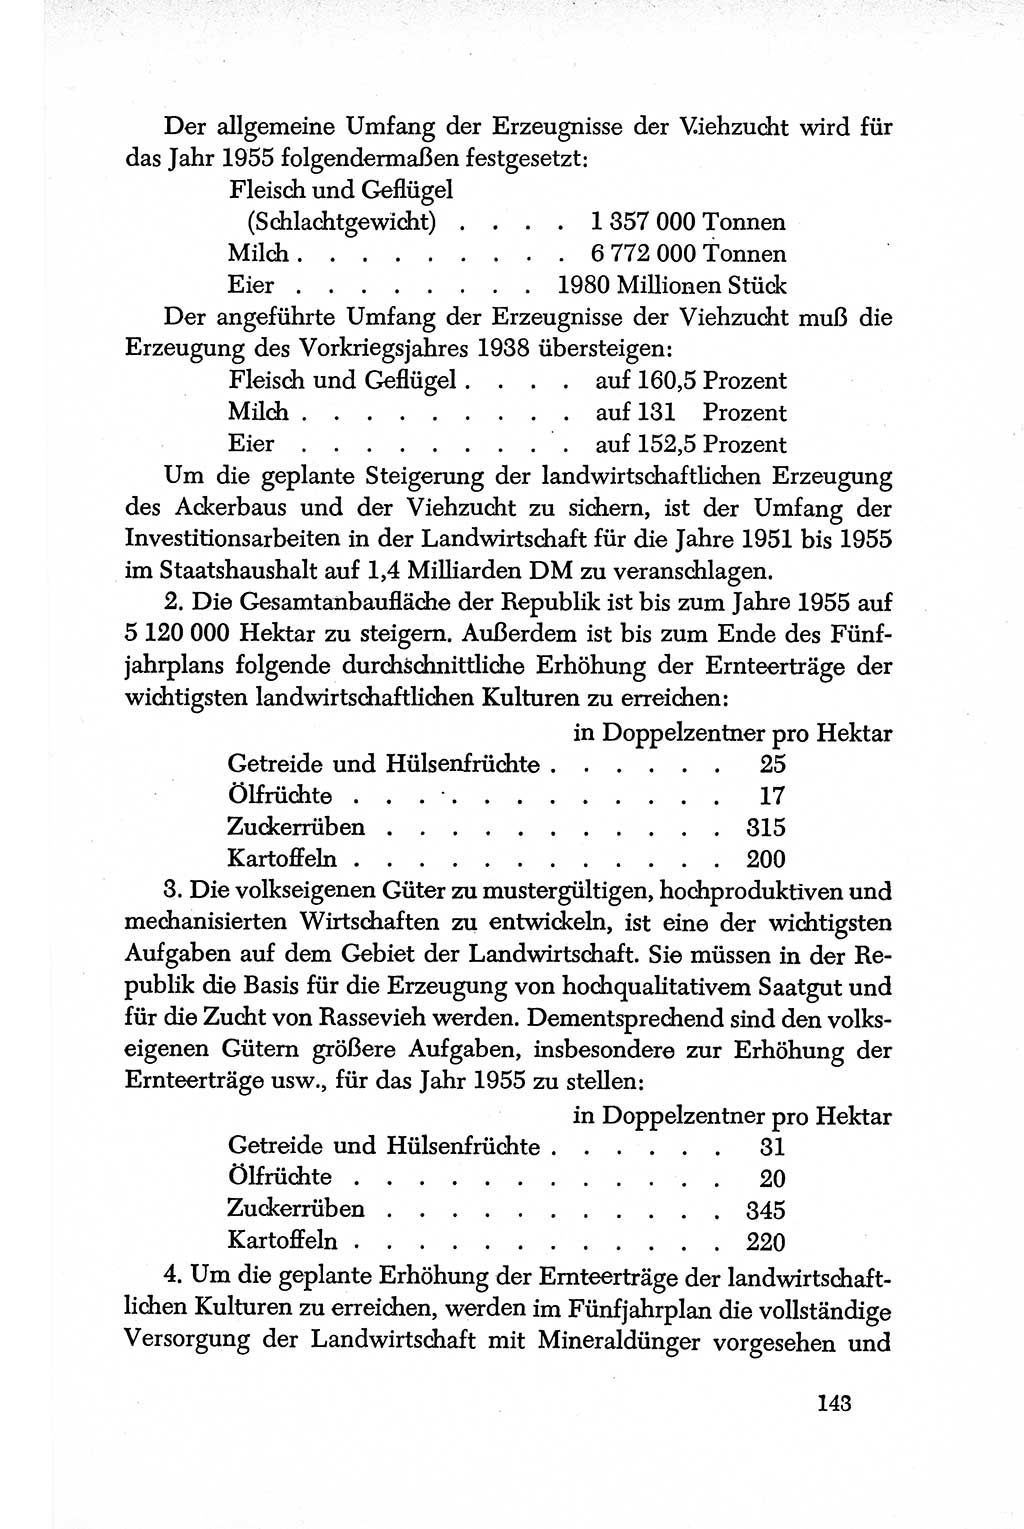 Dokumente der Sozialistischen Einheitspartei Deutschlands (SED) [Deutsche Demokratische Republik (DDR)] 1950-1952, Seite 143 (Dok. SED DDR 1950-1952, S. 143)